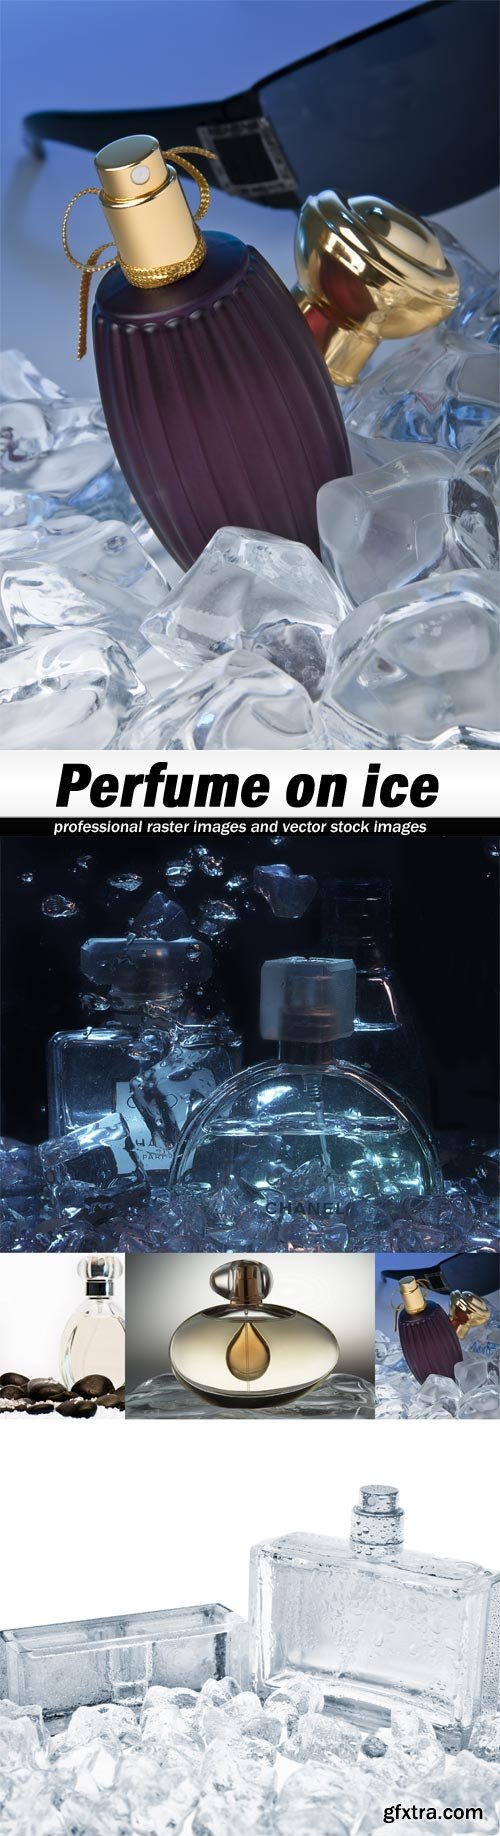 Perfume on ice